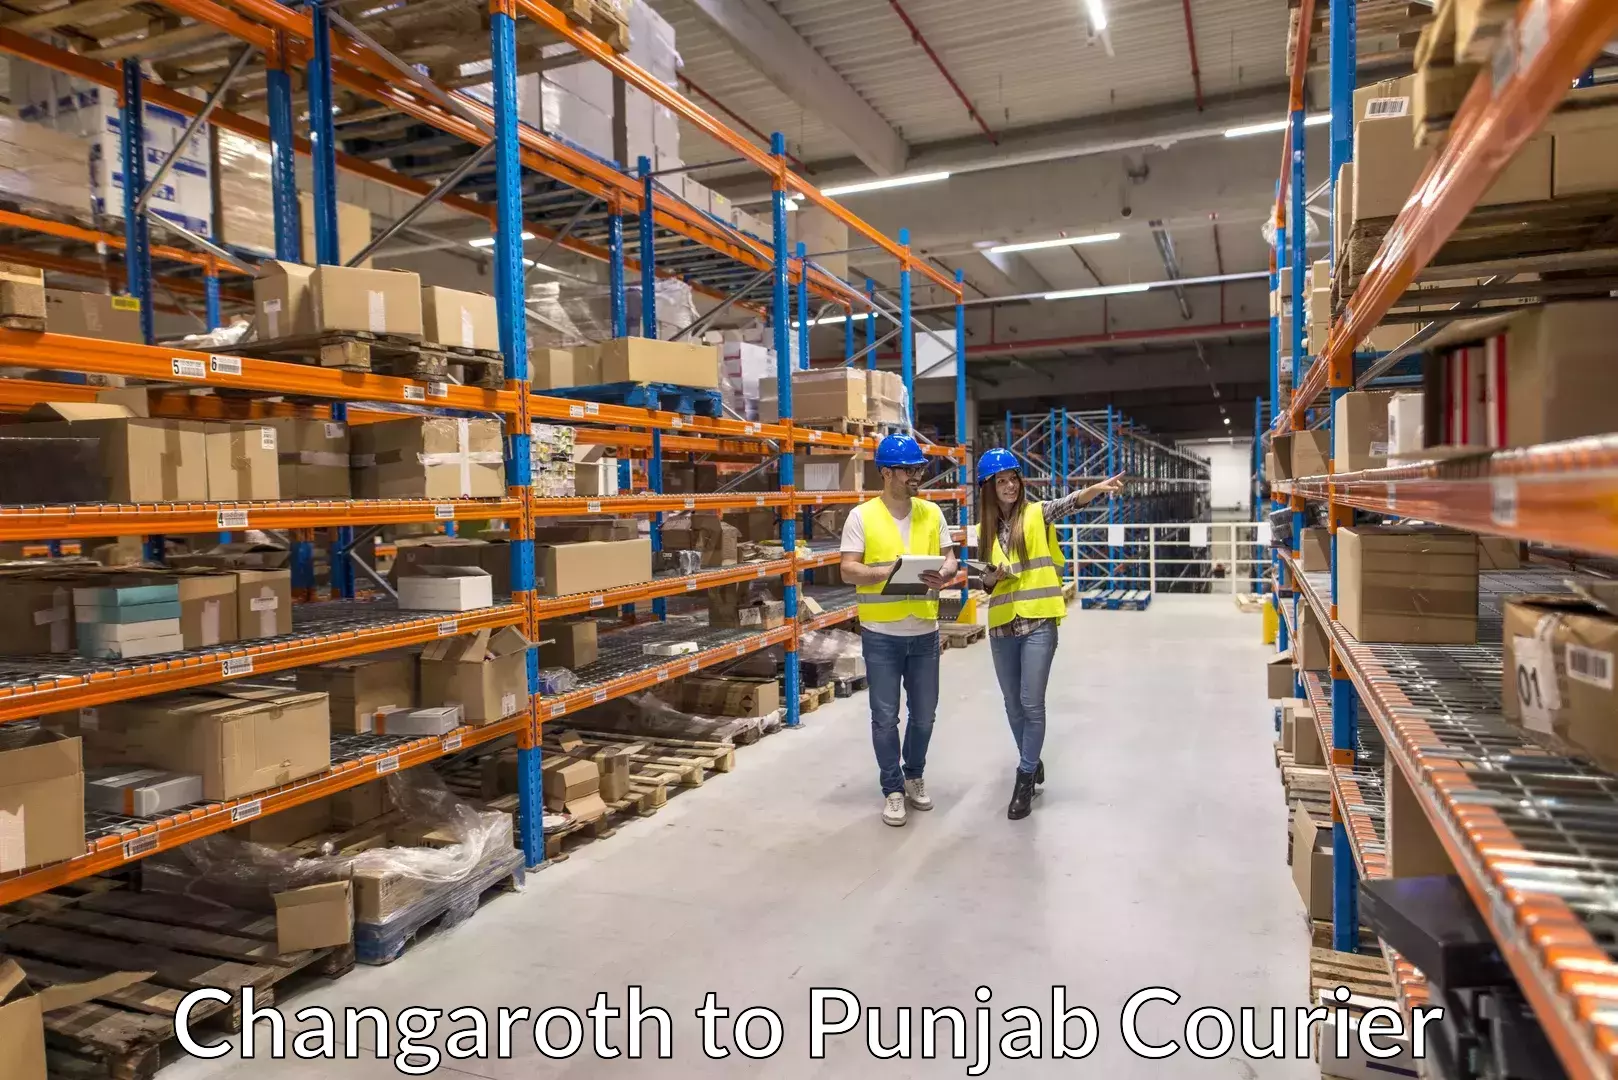 Furniture moving service Changaroth to Punjab